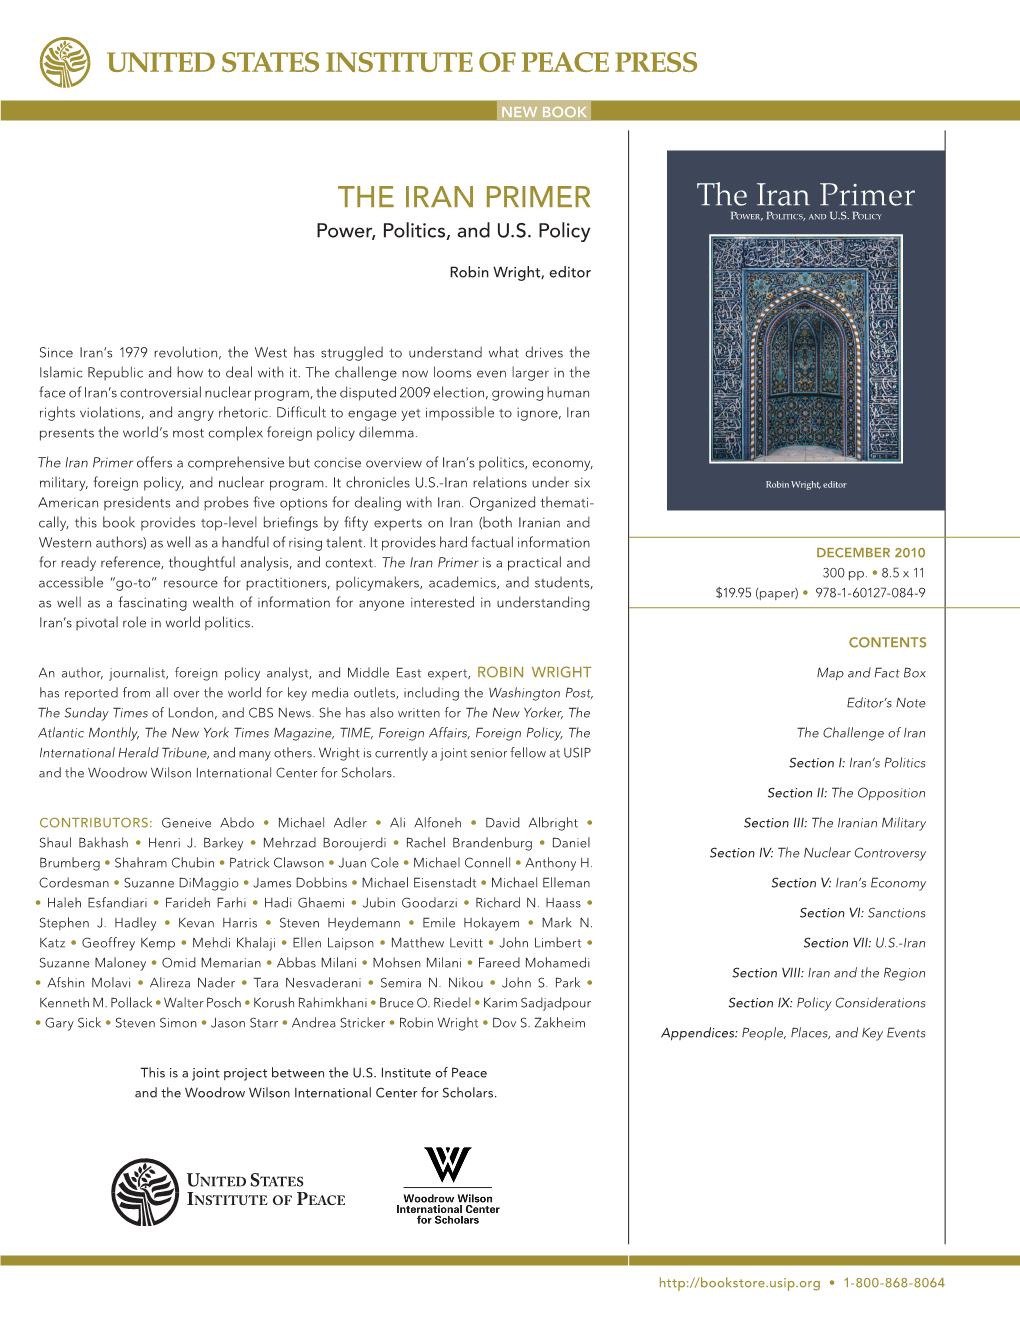 The Iran Primer the Iran Primer POWER , POLITICS, and U.S